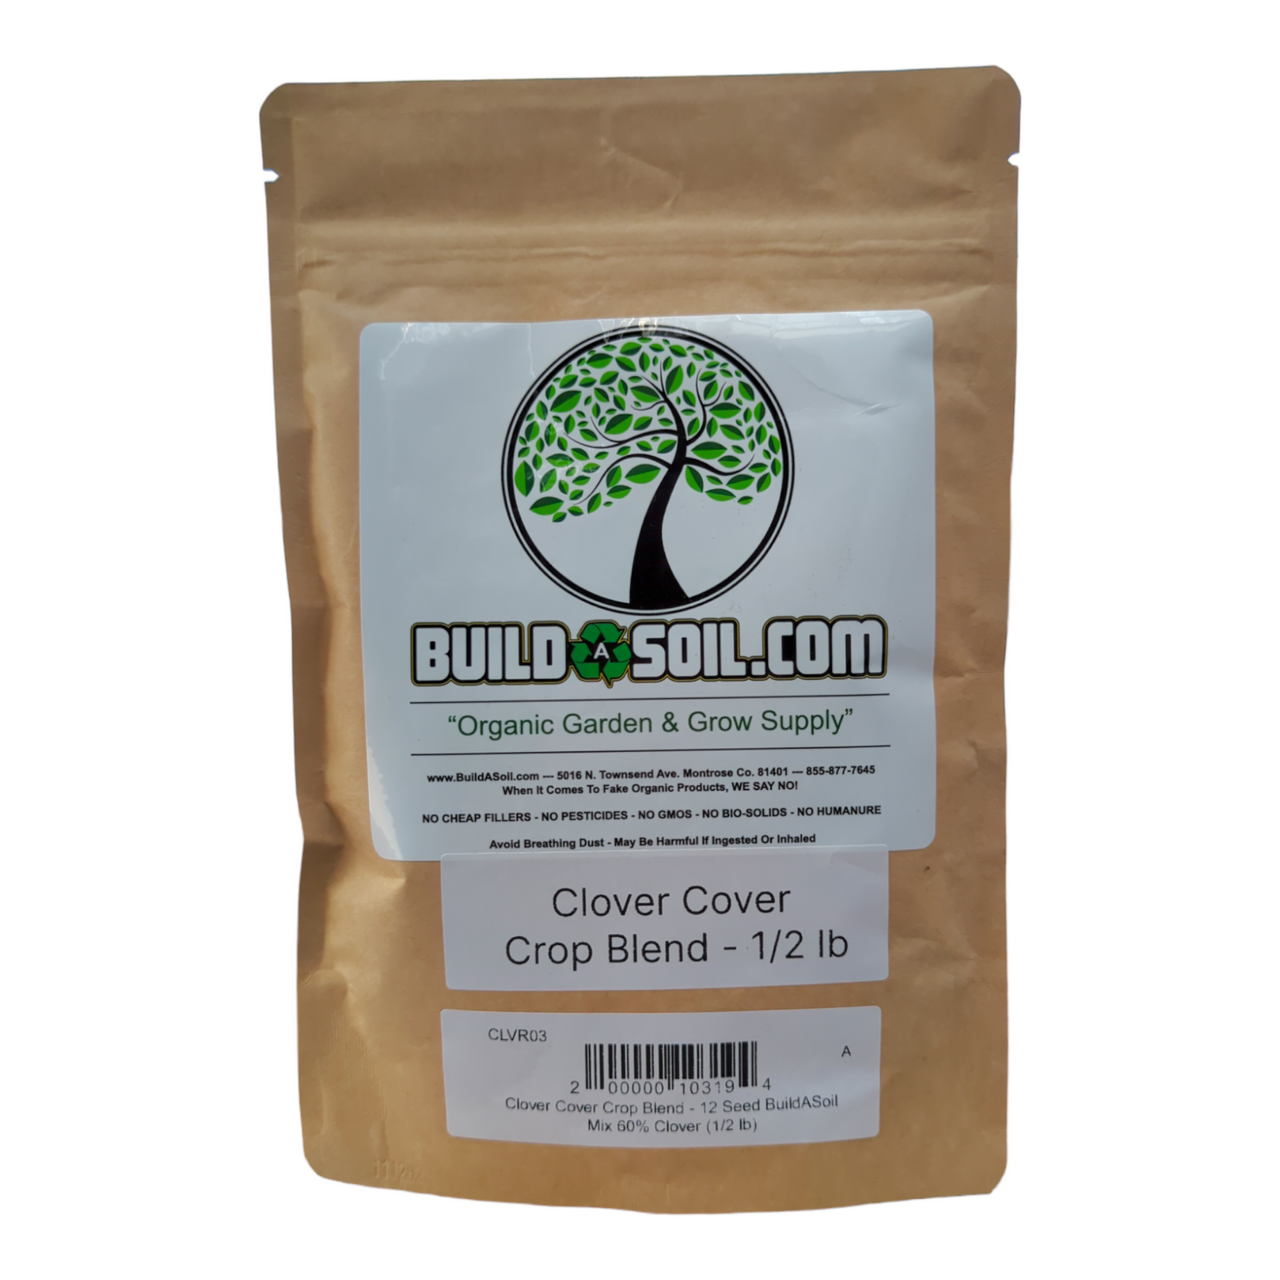 Clover Cover Crop Blend - 12 Seed BuildASoil Mix 60% Clover